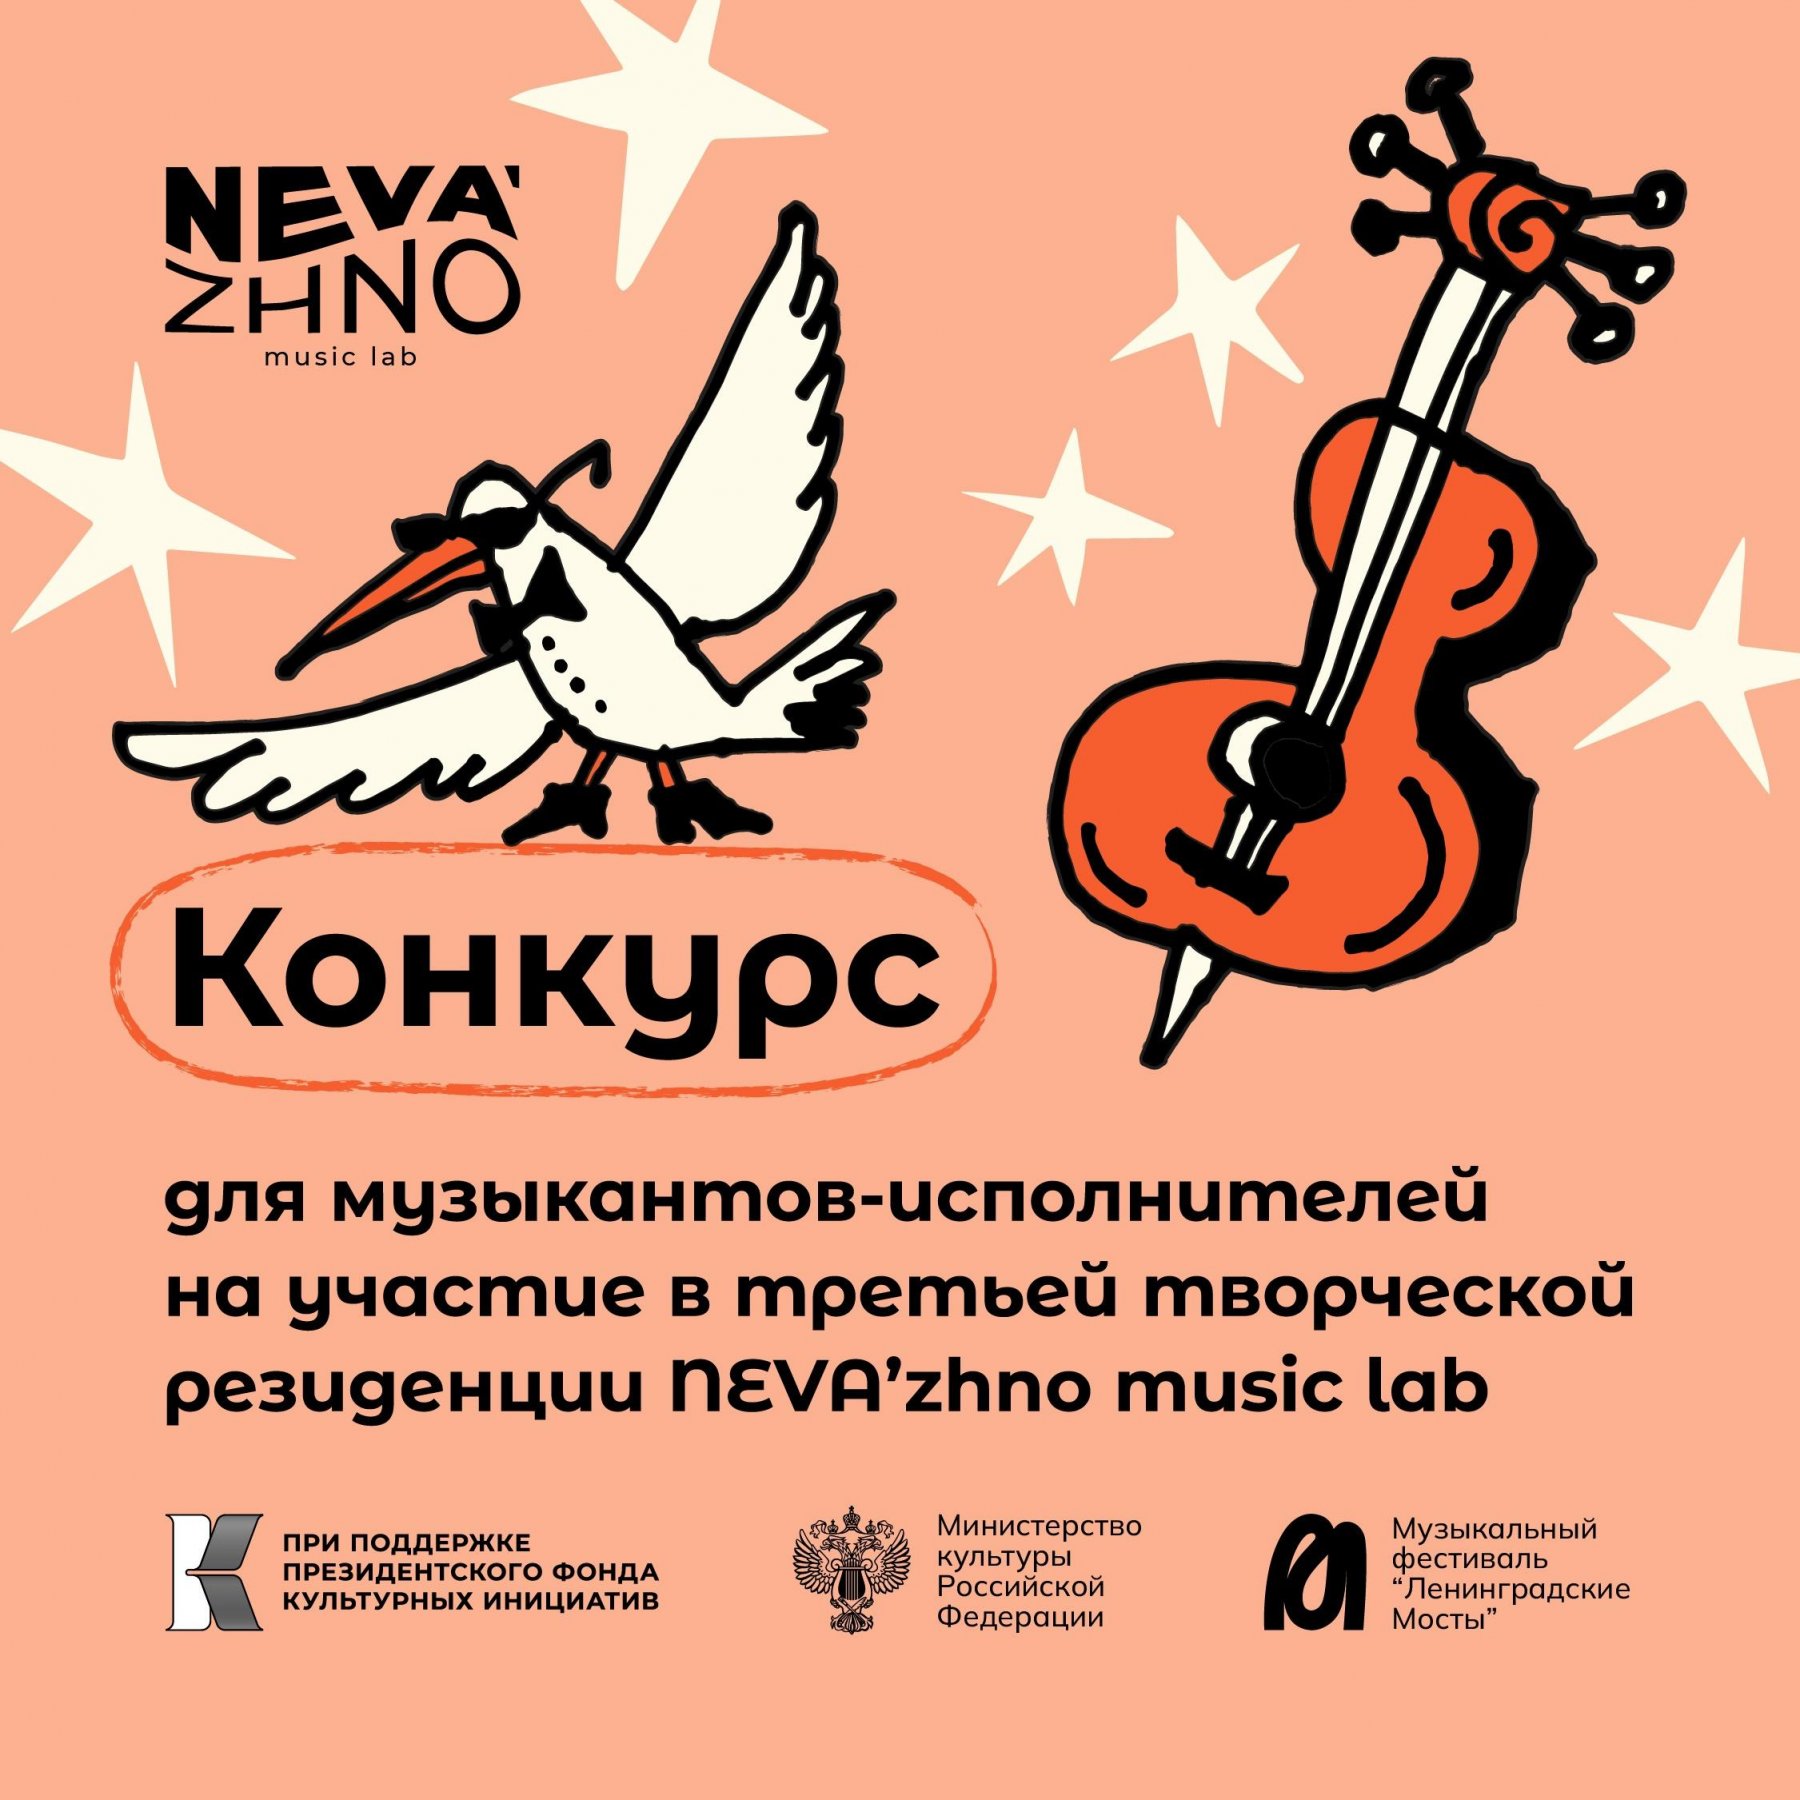 ПРИЕМ ЗАЯВОК: музыкальные резиденции Neva’zhno music lab (г. Санкт-Петербург)